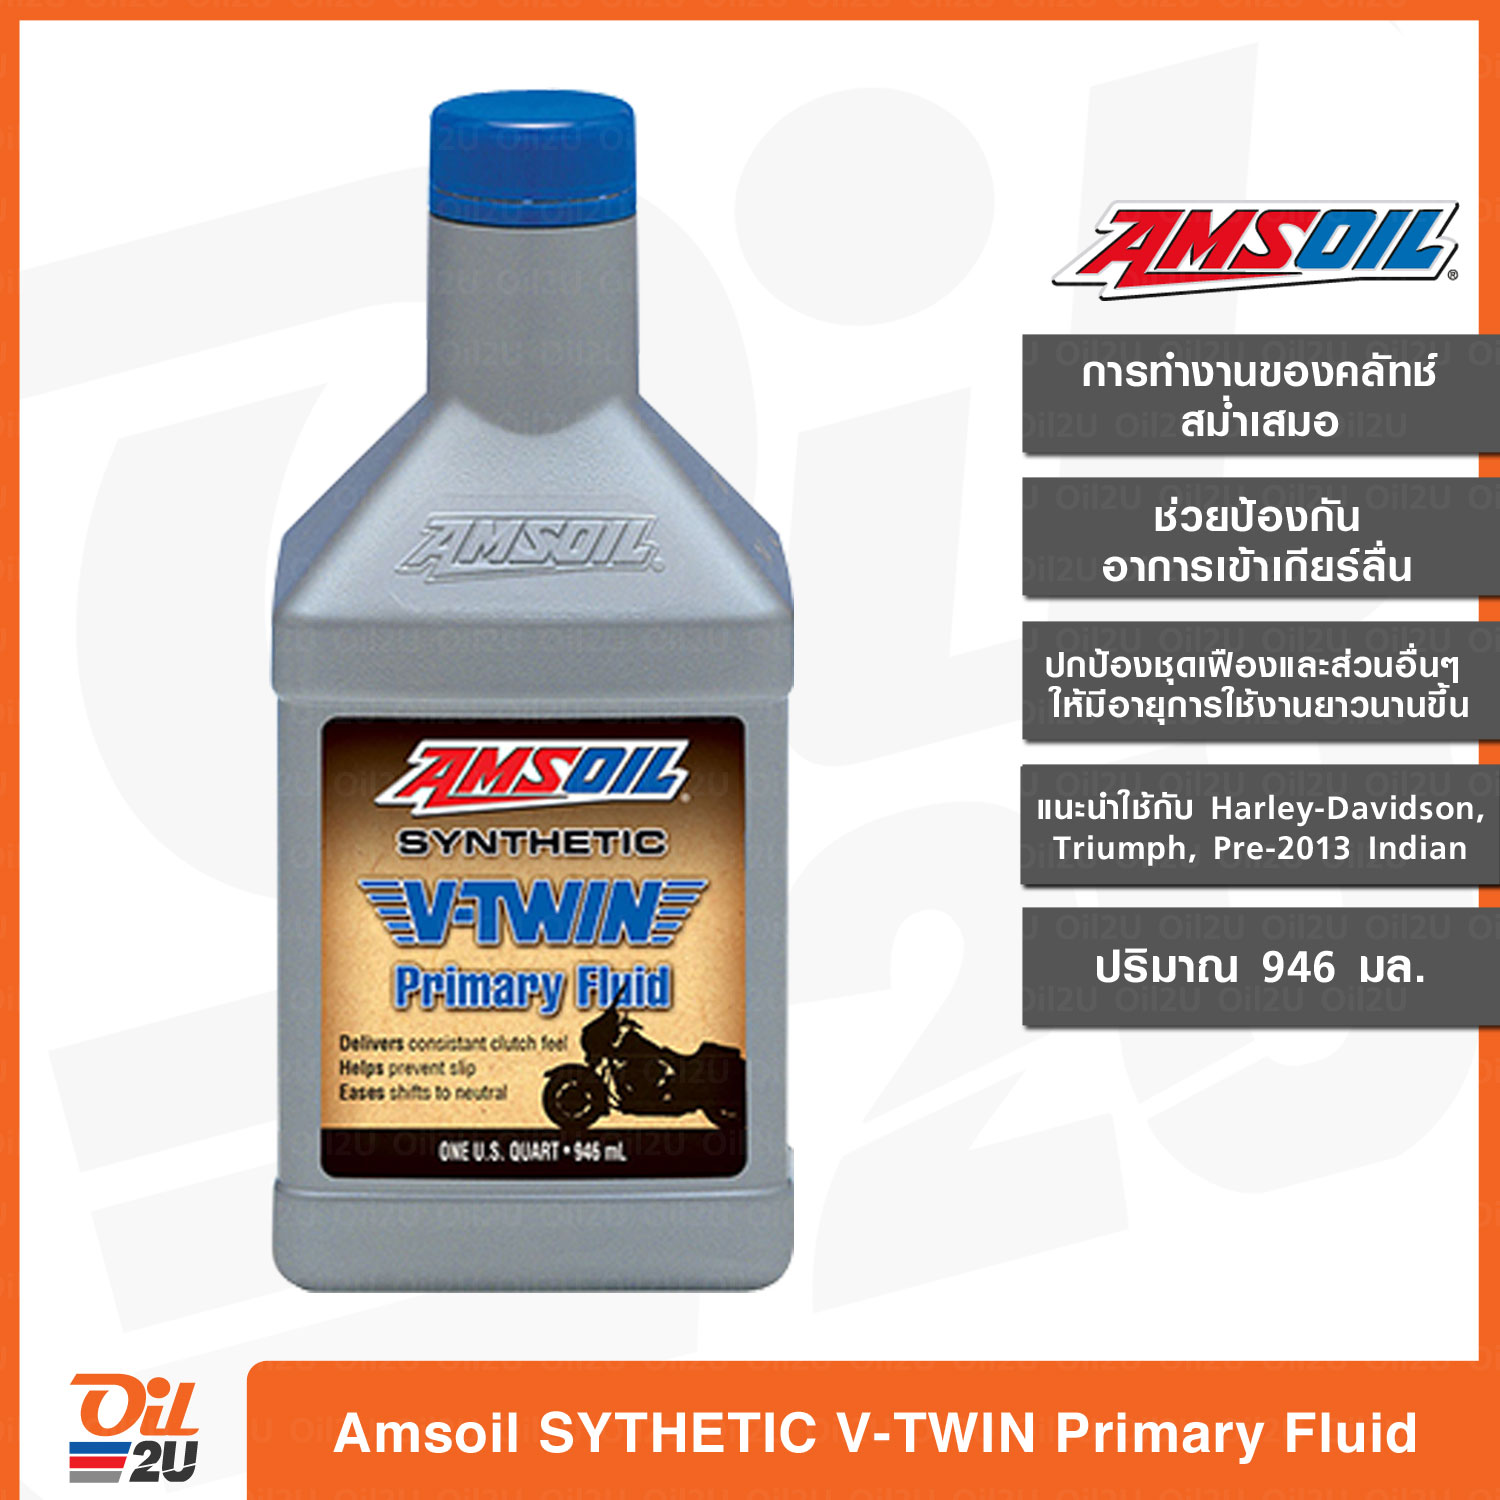 น้ำมันไพรมารี่ Amsoil Synthetic V-TWIN Primary Fluid ปริมาณ 1 ควอทซ์ /946 ml. แนะนำใช้กับ Harley Davidson, Triumph และ INDIAN รุ่นก่อนปี 2013 | Oil2U